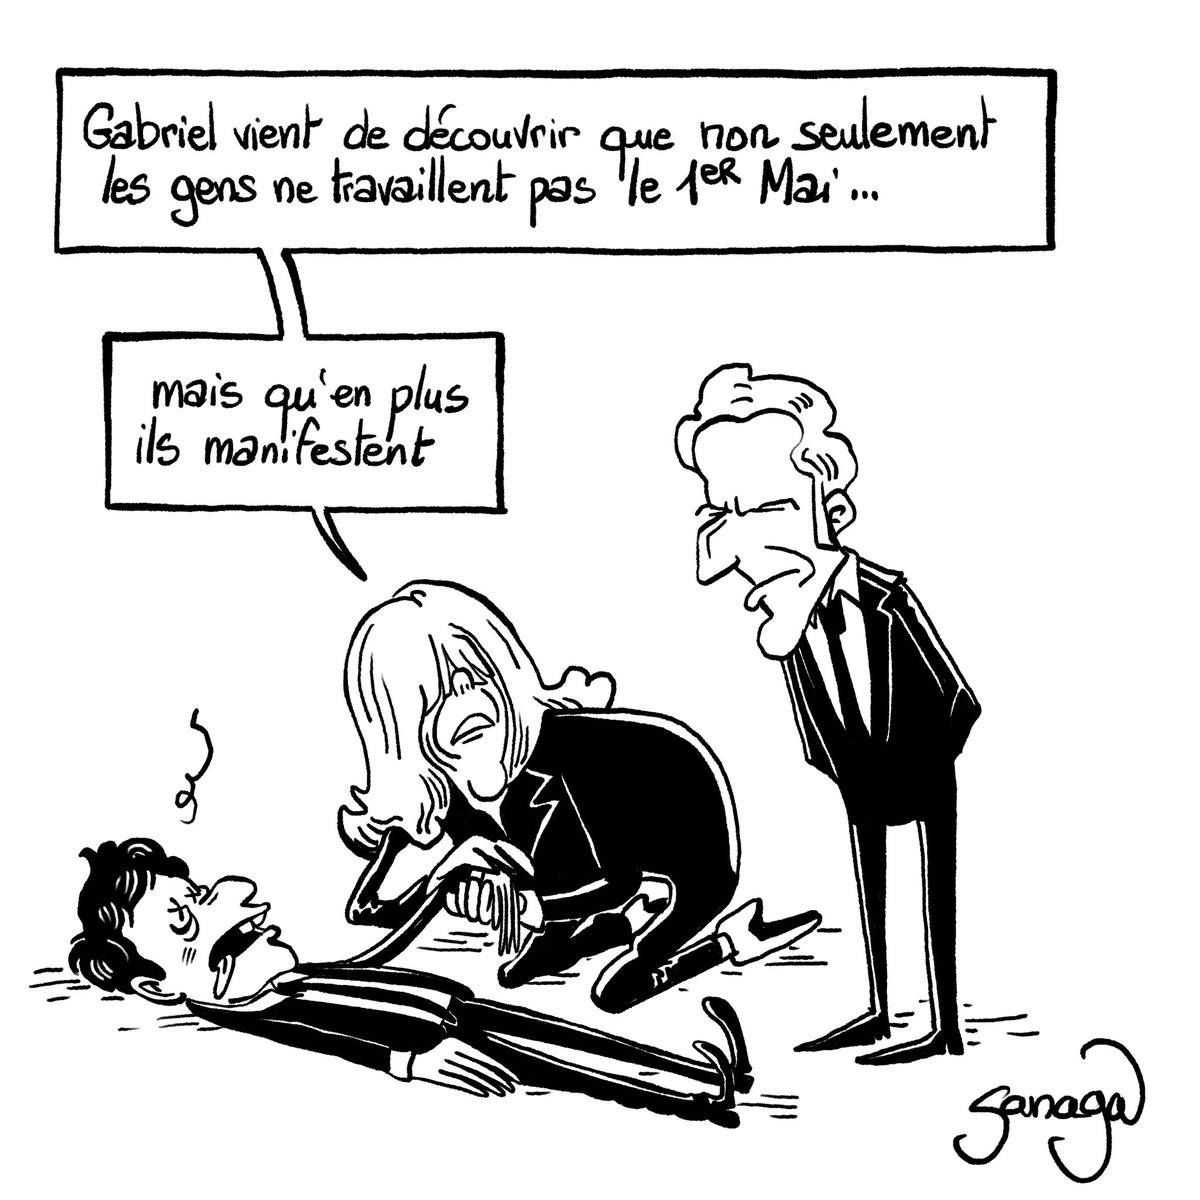 Le #DessinDePresse de Sanaga : Le 1er mai d’Attal
Retrouvez tous les dessins de Sanaga : blagues-et-dessins.com
#DessinDeSanaga #ActuDeSanaga #Sanaga #Humour #Macron #EmmanuelMacron #BrigitteMacron #Attal #GabrielAttal #1erMai #PremierMai #FêteDuTravail